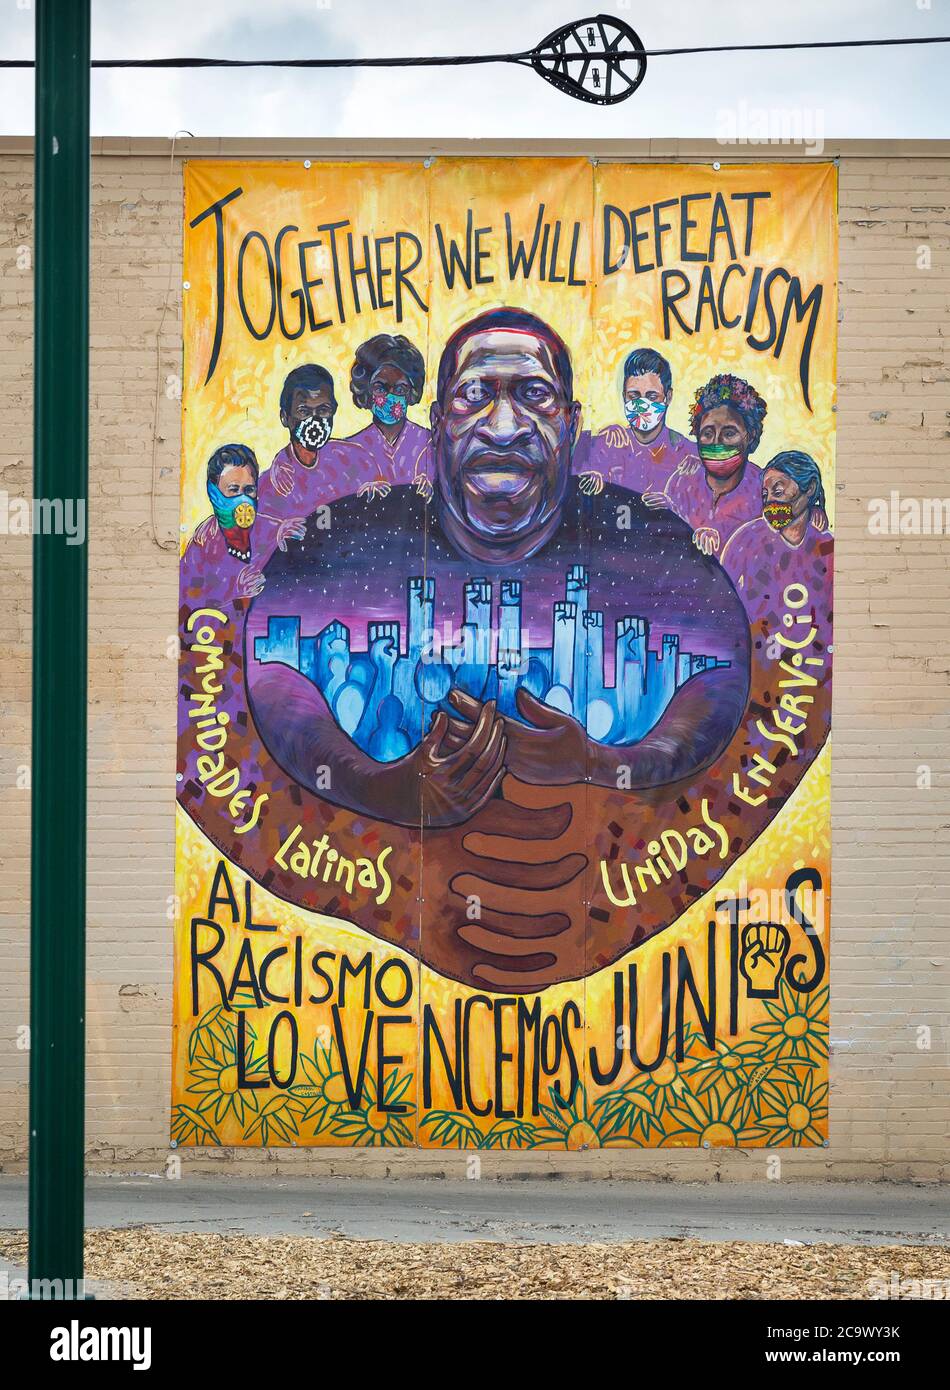 Murale avec un portrait de George Floyd et des slogans ensemble, nous allons vaincre le racisme, Al Racismo Lo Vendemos Juntis, Comunidades Latinas Unidas en Servic Banque D'Images